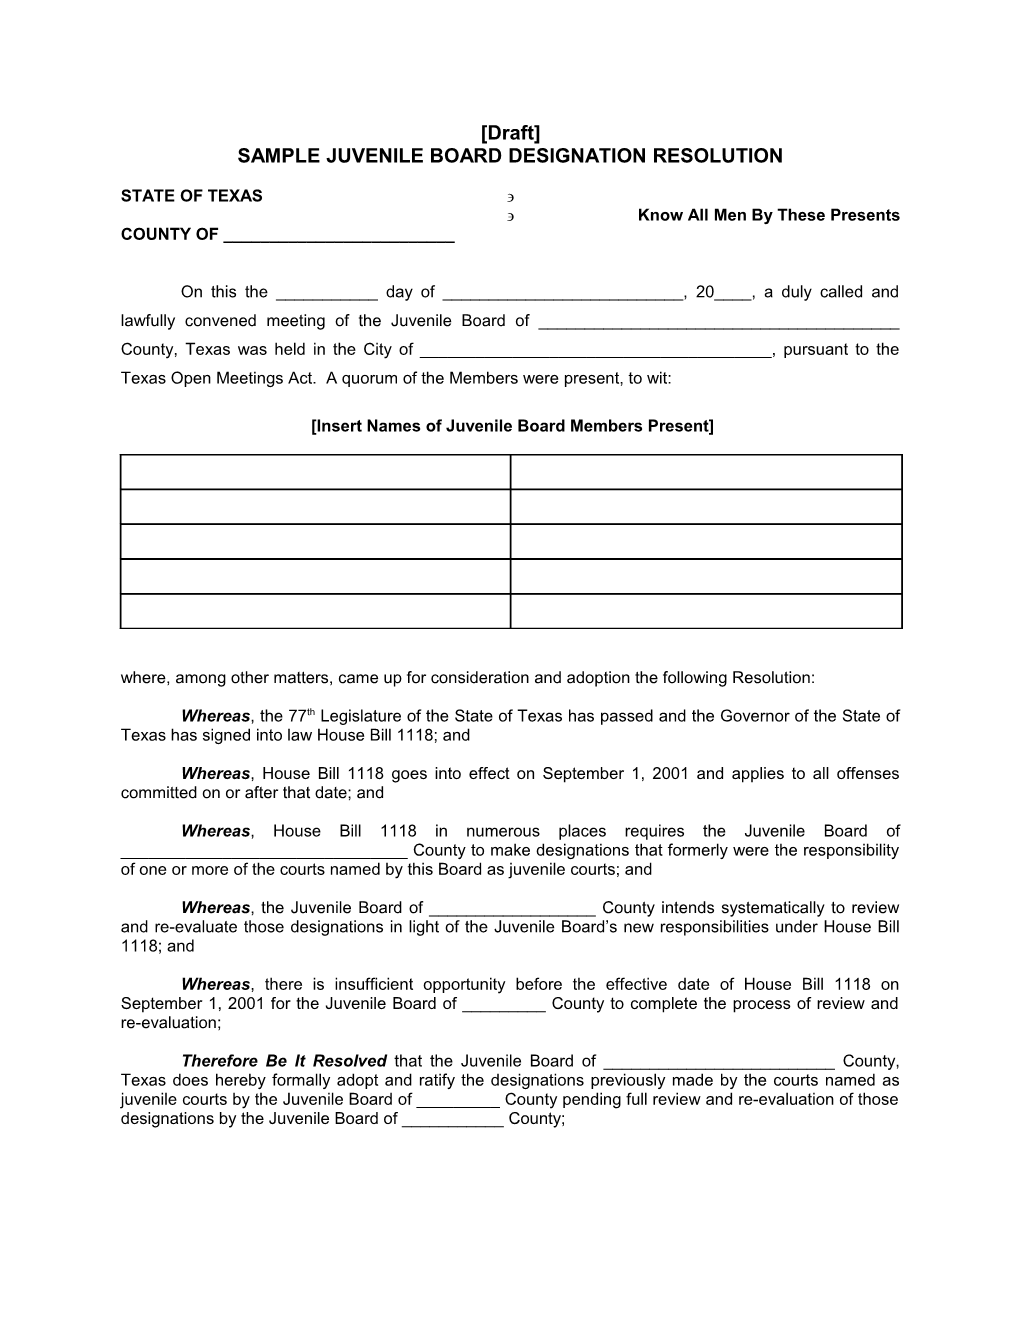 TJPC-AGE-01-08 Sample Juvenile Board Designation Resolution